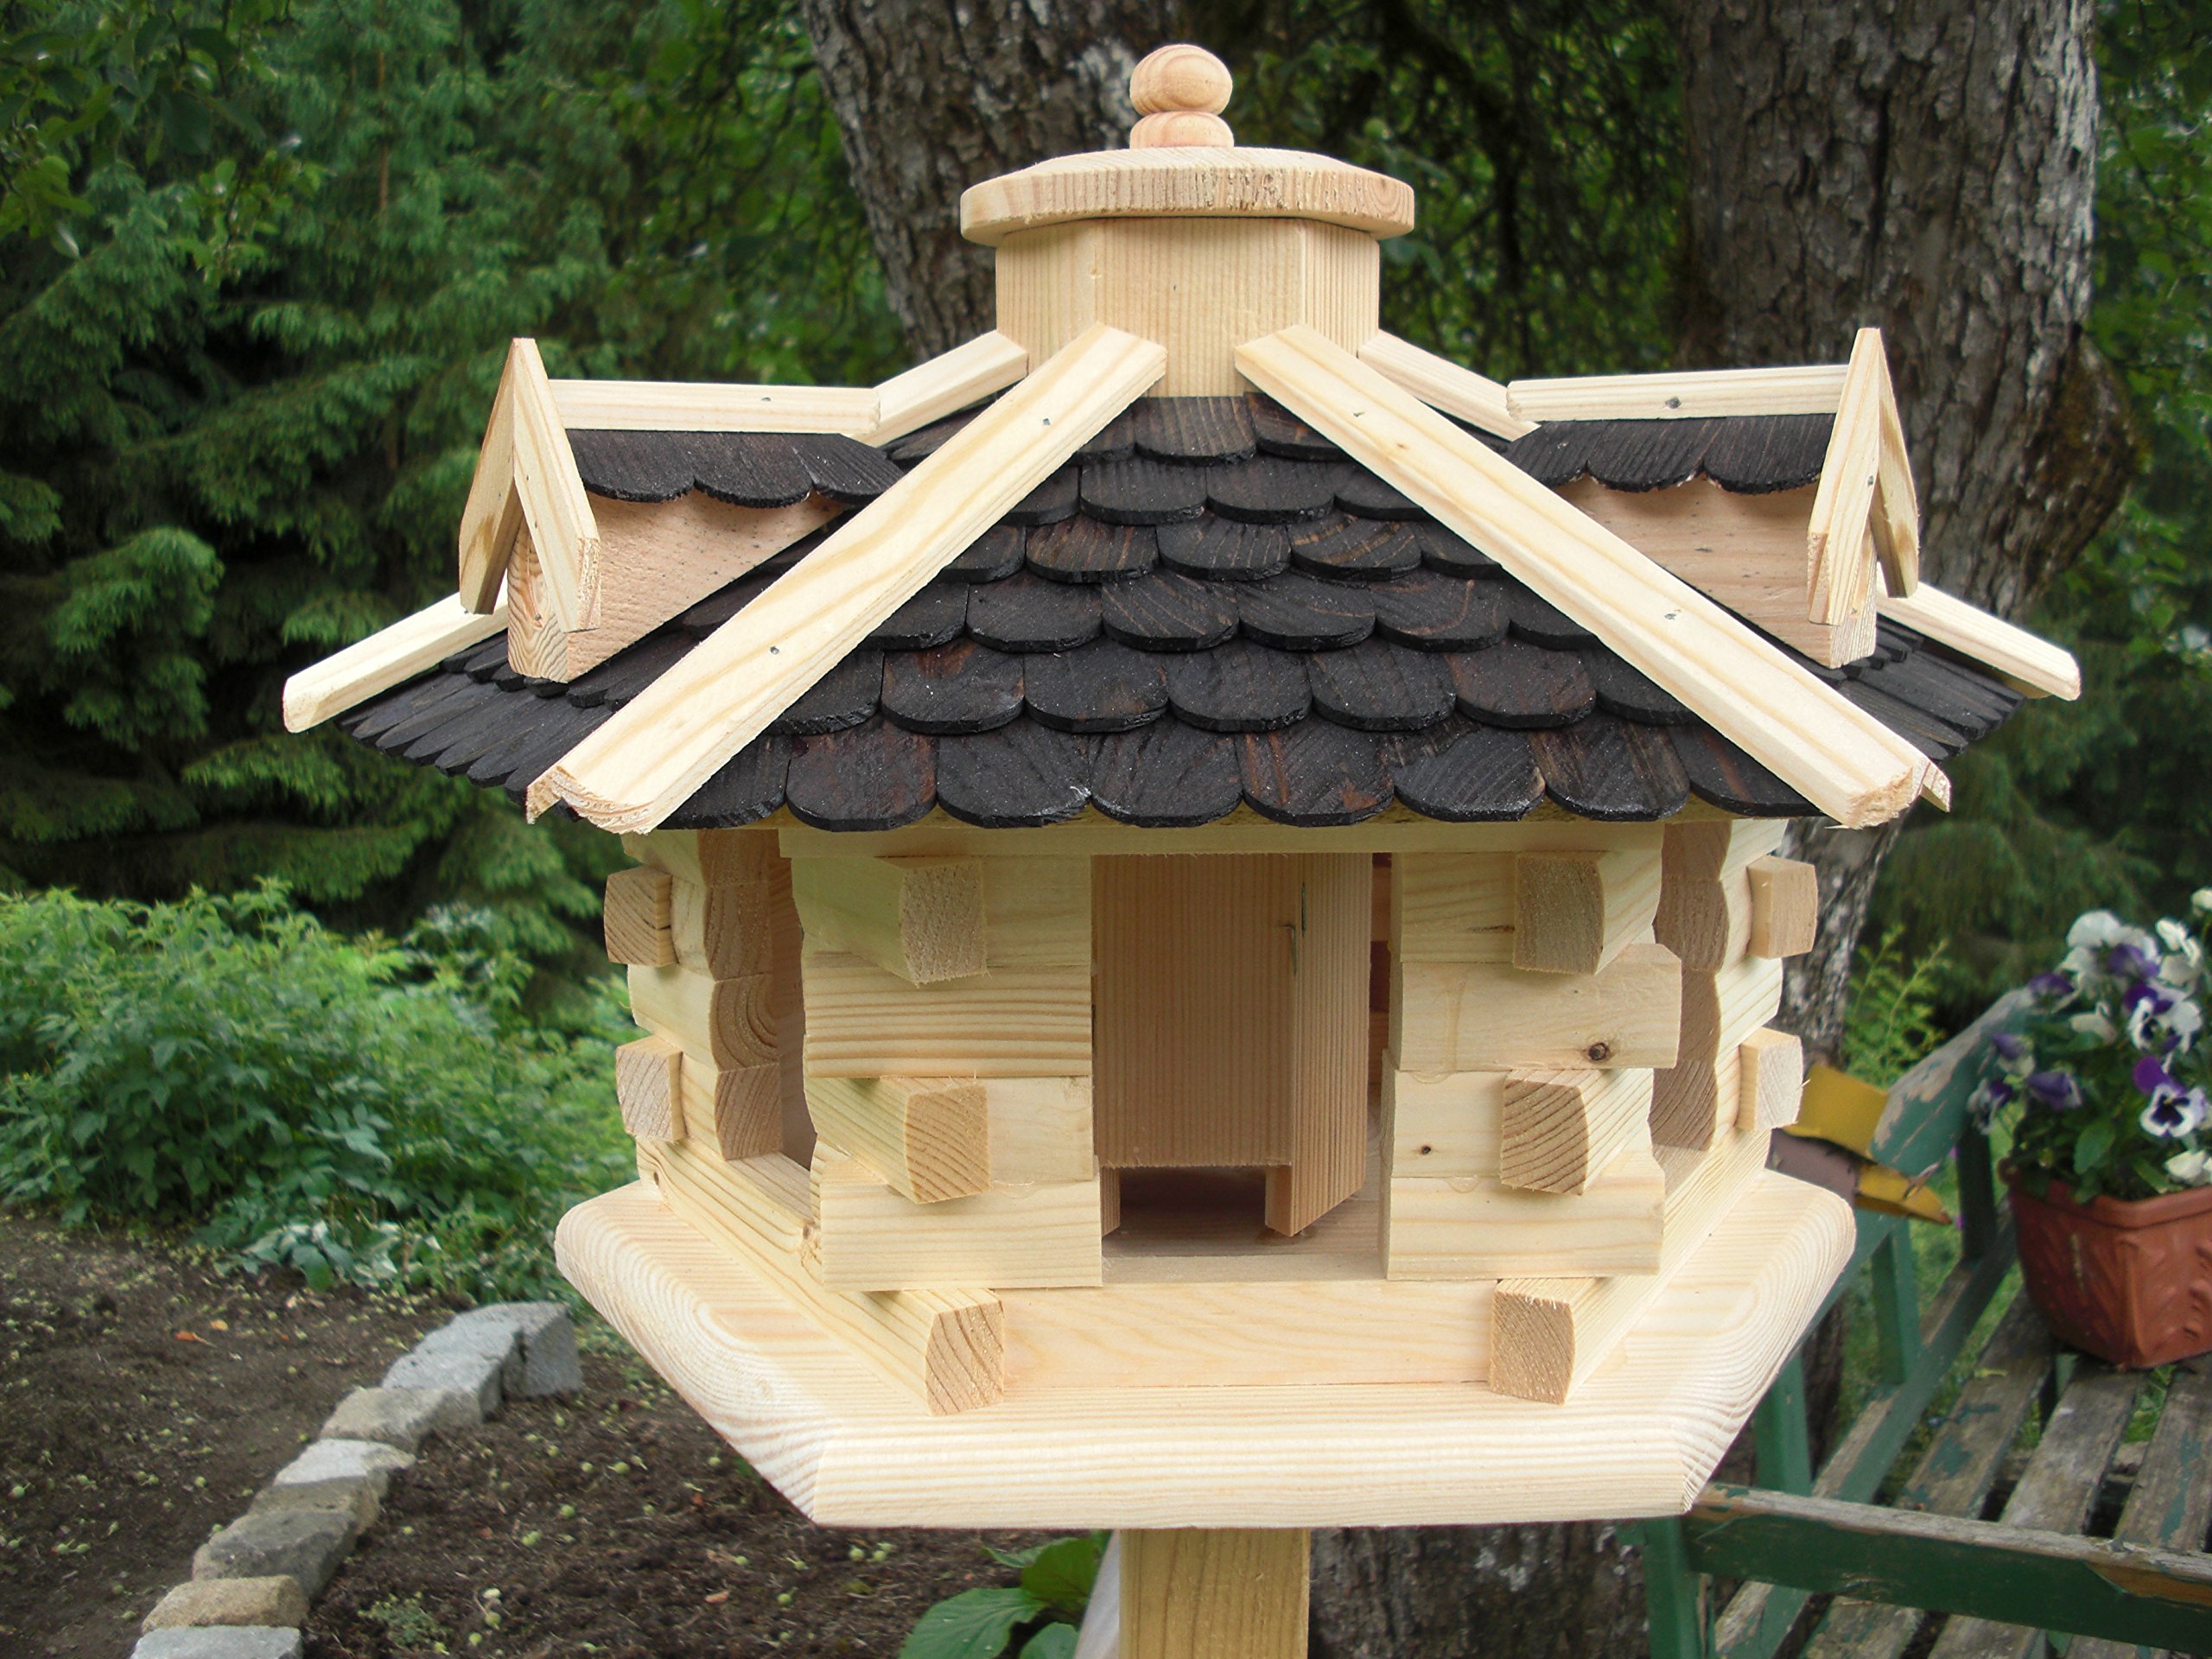 Vogelhaus-Vogelhäuser Vogelfutterhaus Vogelhäuschen aus Holz Vogelhausständer Nistkasten Schreinerarbeit in unterschiedlichen Farben erhältlich … (Vogelhaus V31)